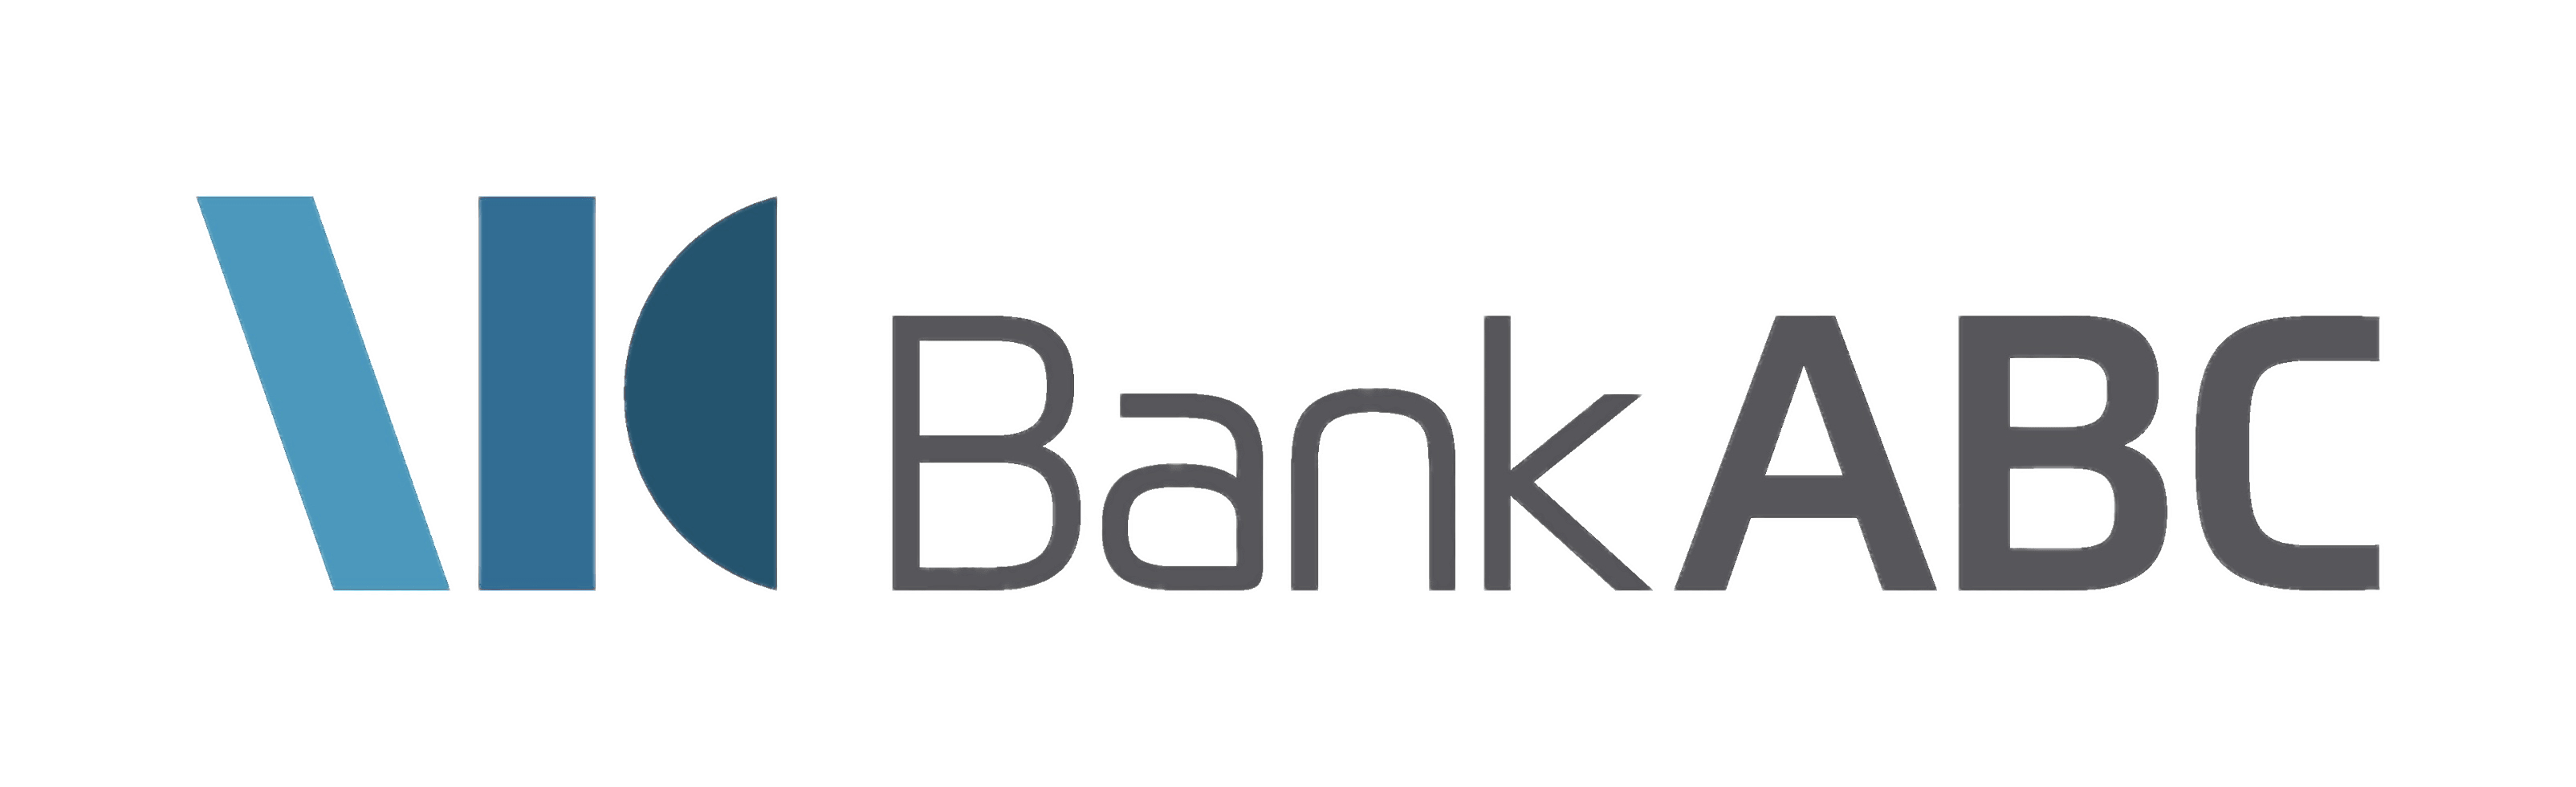 Bank Logo - Bank ABC Logo transparent PNG - StickPNG